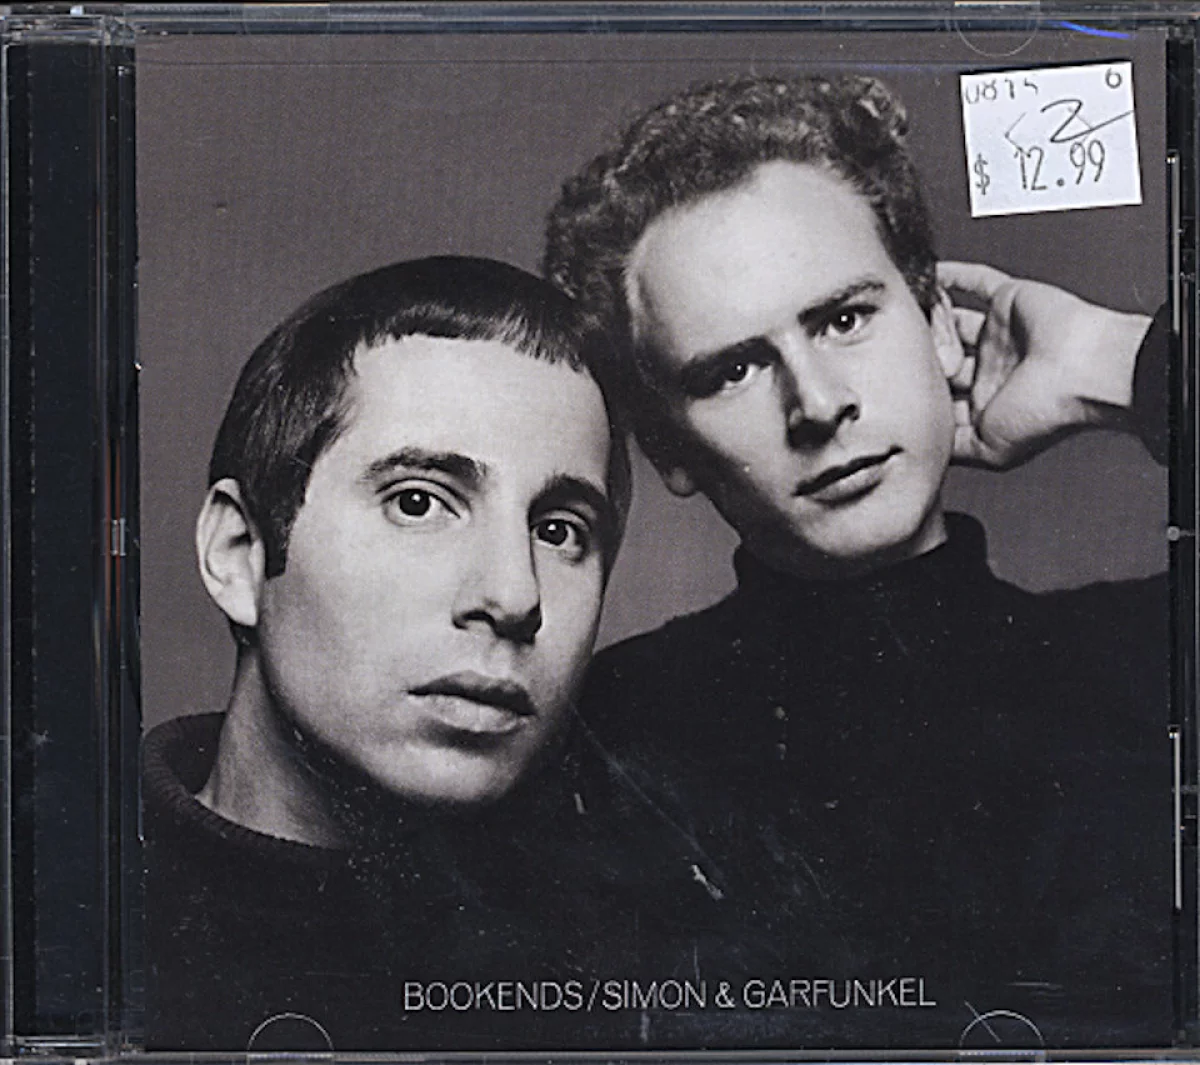 Simon & Garfunkel CD, 2001 at Wolfgang's